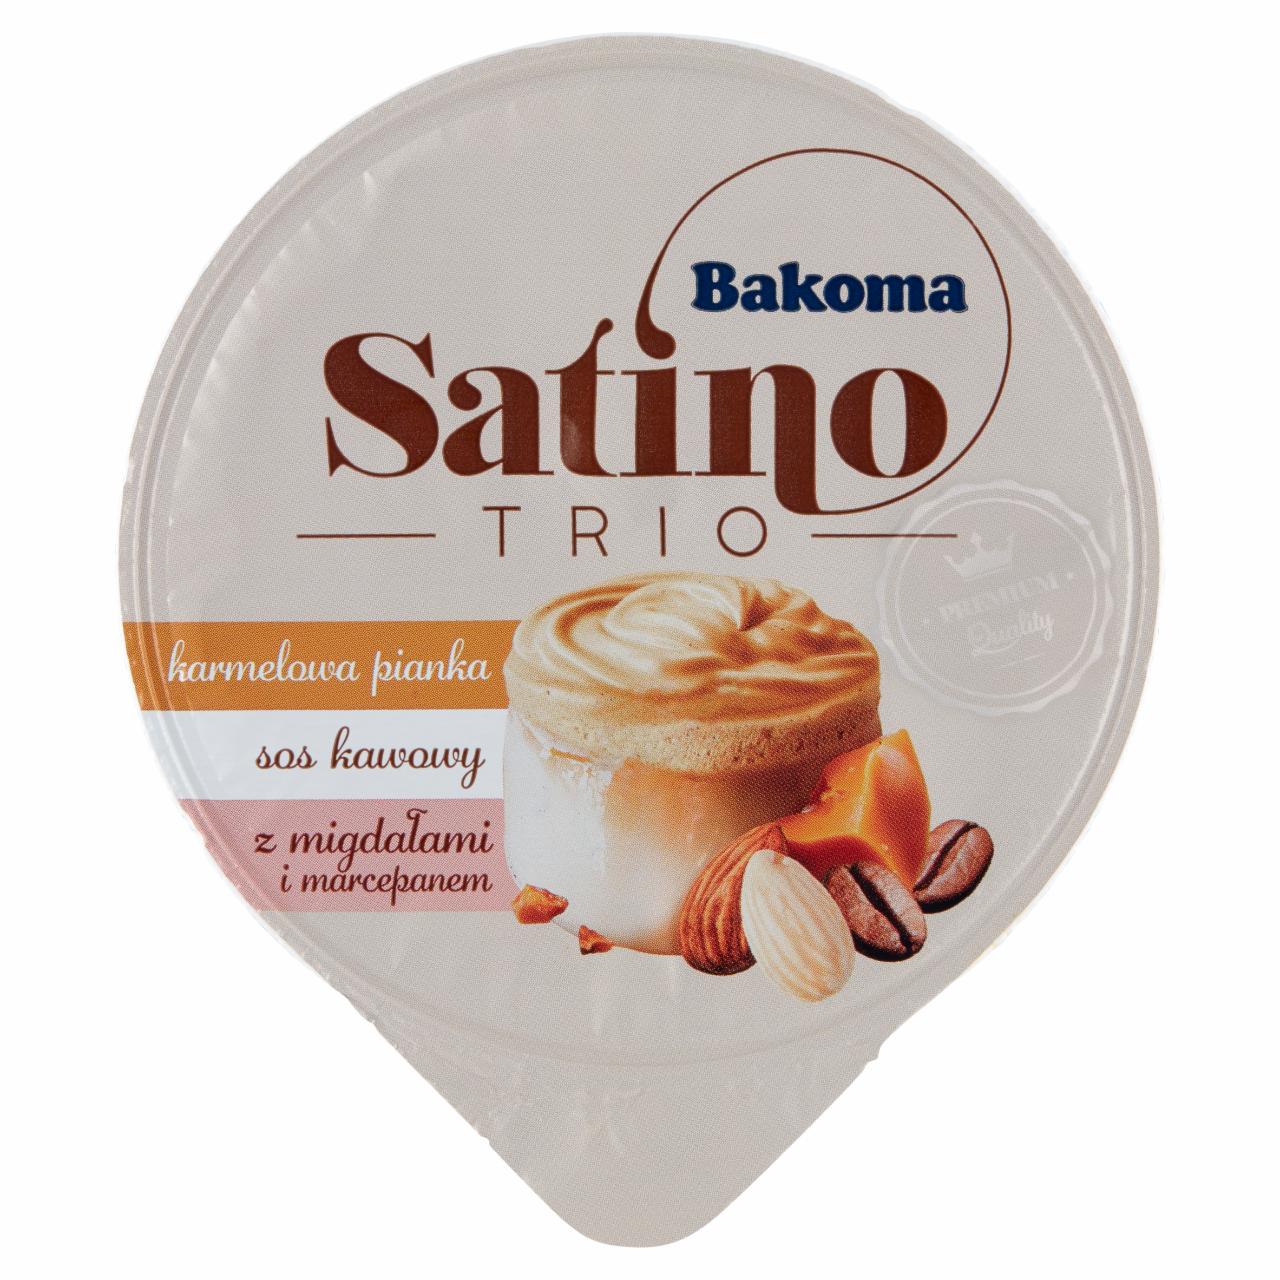 Zdjęcia - Bakoma Satino Trio Deser karmelowa pianka sos kawowy z migdałami i marcepanem 100 g